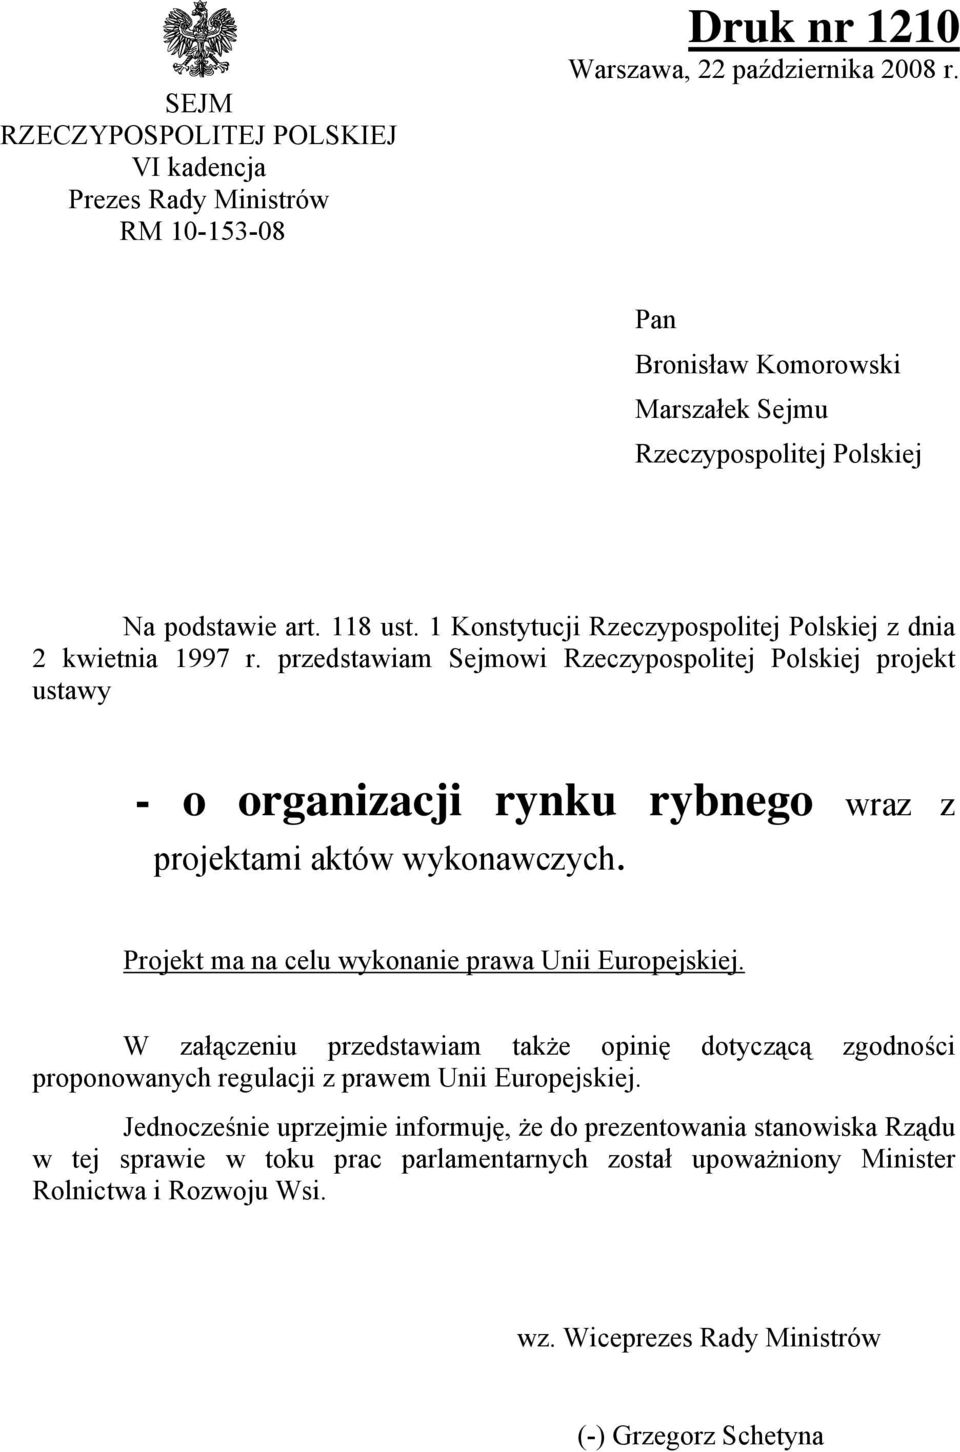 przedstawiam Sejmowi Rzeczypospolitej Polskiej projekt ustawy - o organizacji rynku rybnego wraz z projektami aktów wykonawczych. Projekt ma na celu wykonanie prawa Unii Europejskiej.